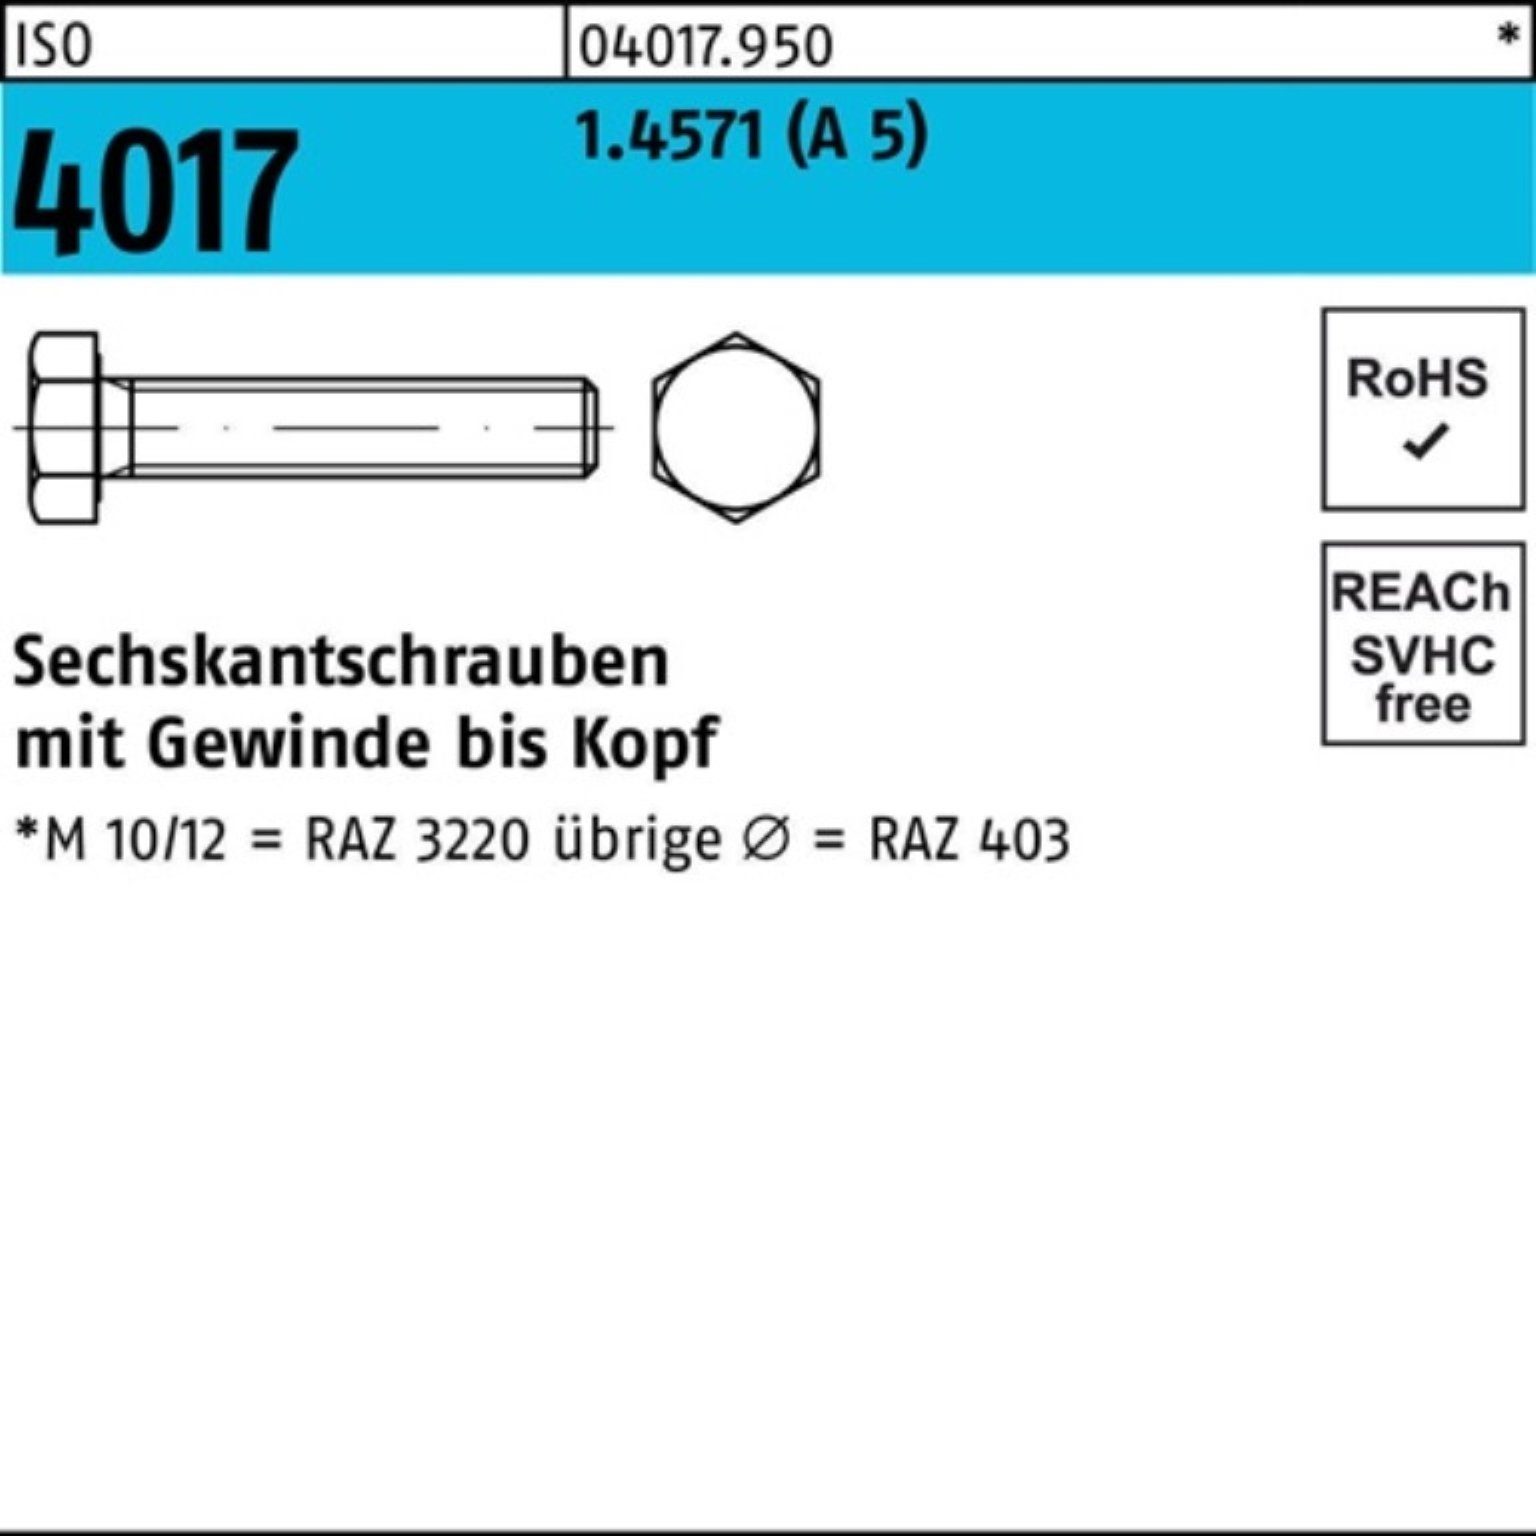 Bufab Sechskantschraube 100er Pack Sechskantschraube 5 M16x 4017 4017 30 A ISO ISO Stück VG 1